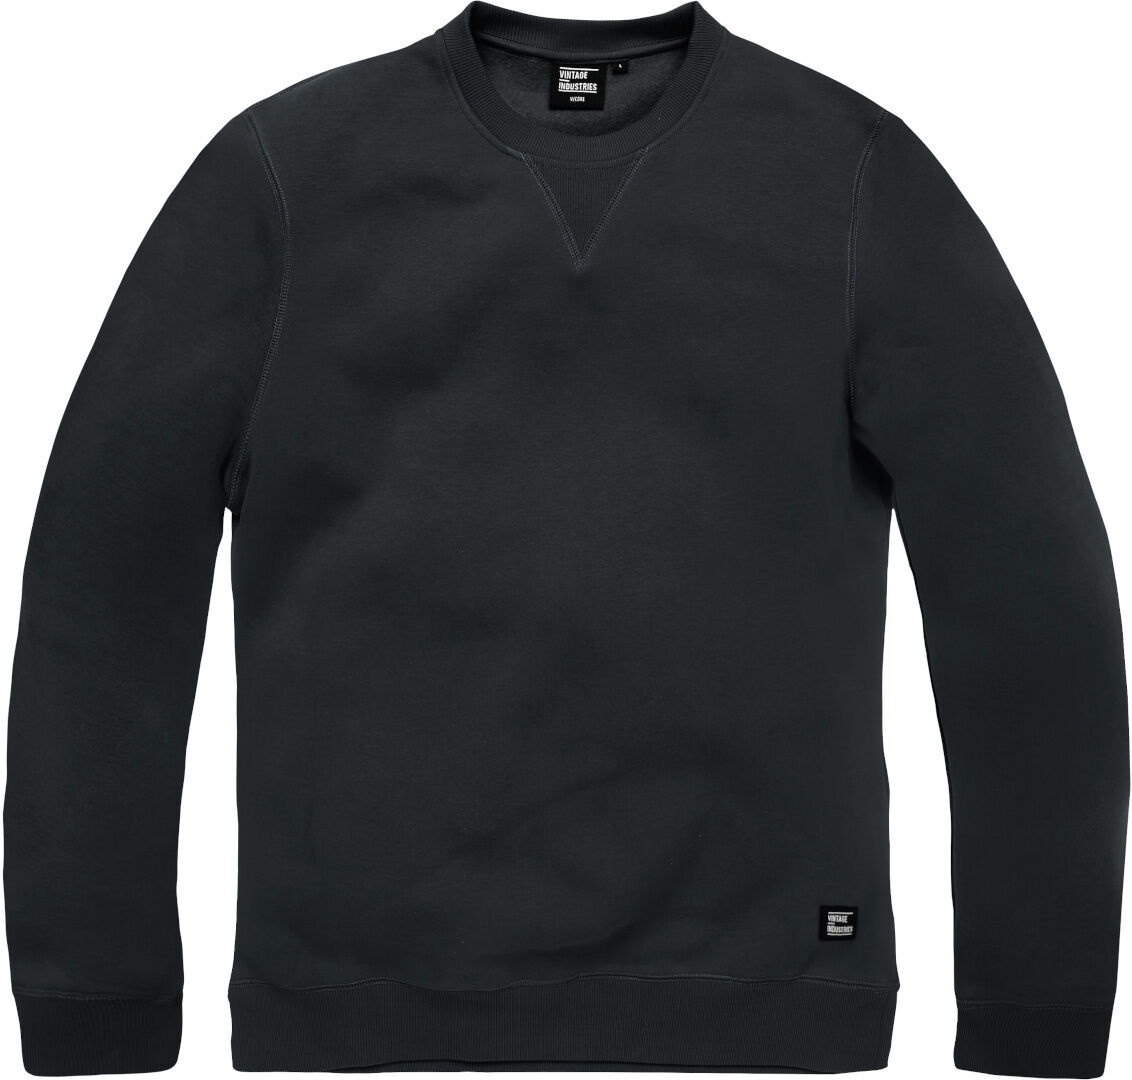 Vintage Industries Greeley Crewneck Sweatshirt Noir M